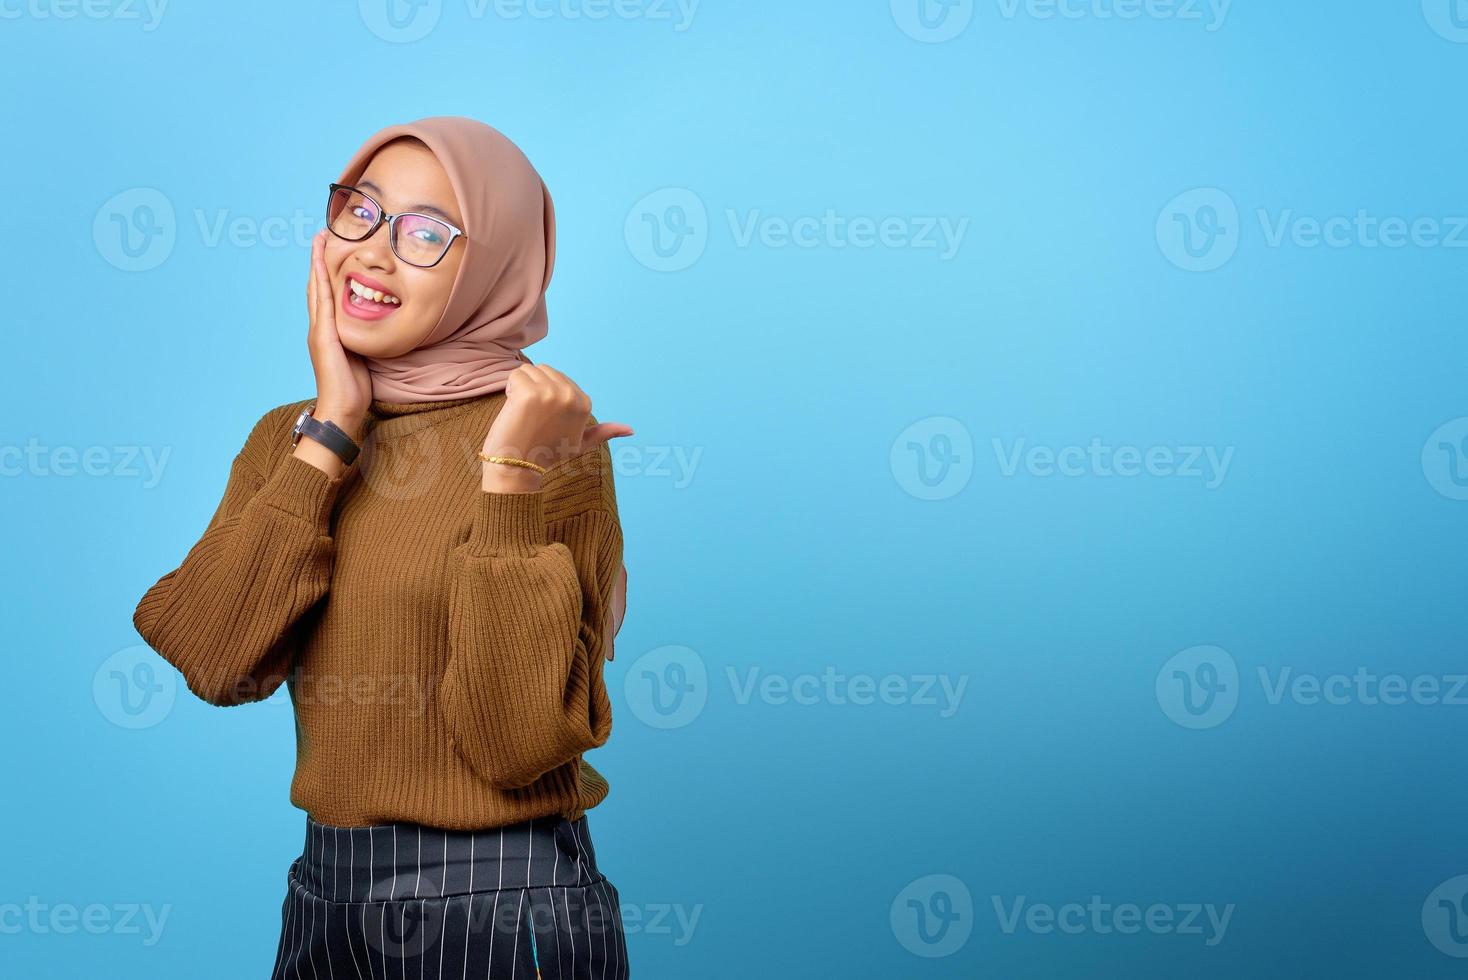 vrolijke jonge aziatische vrouw die met de vingers wijst naar kopieerruimte op blauwe achtergrond foto